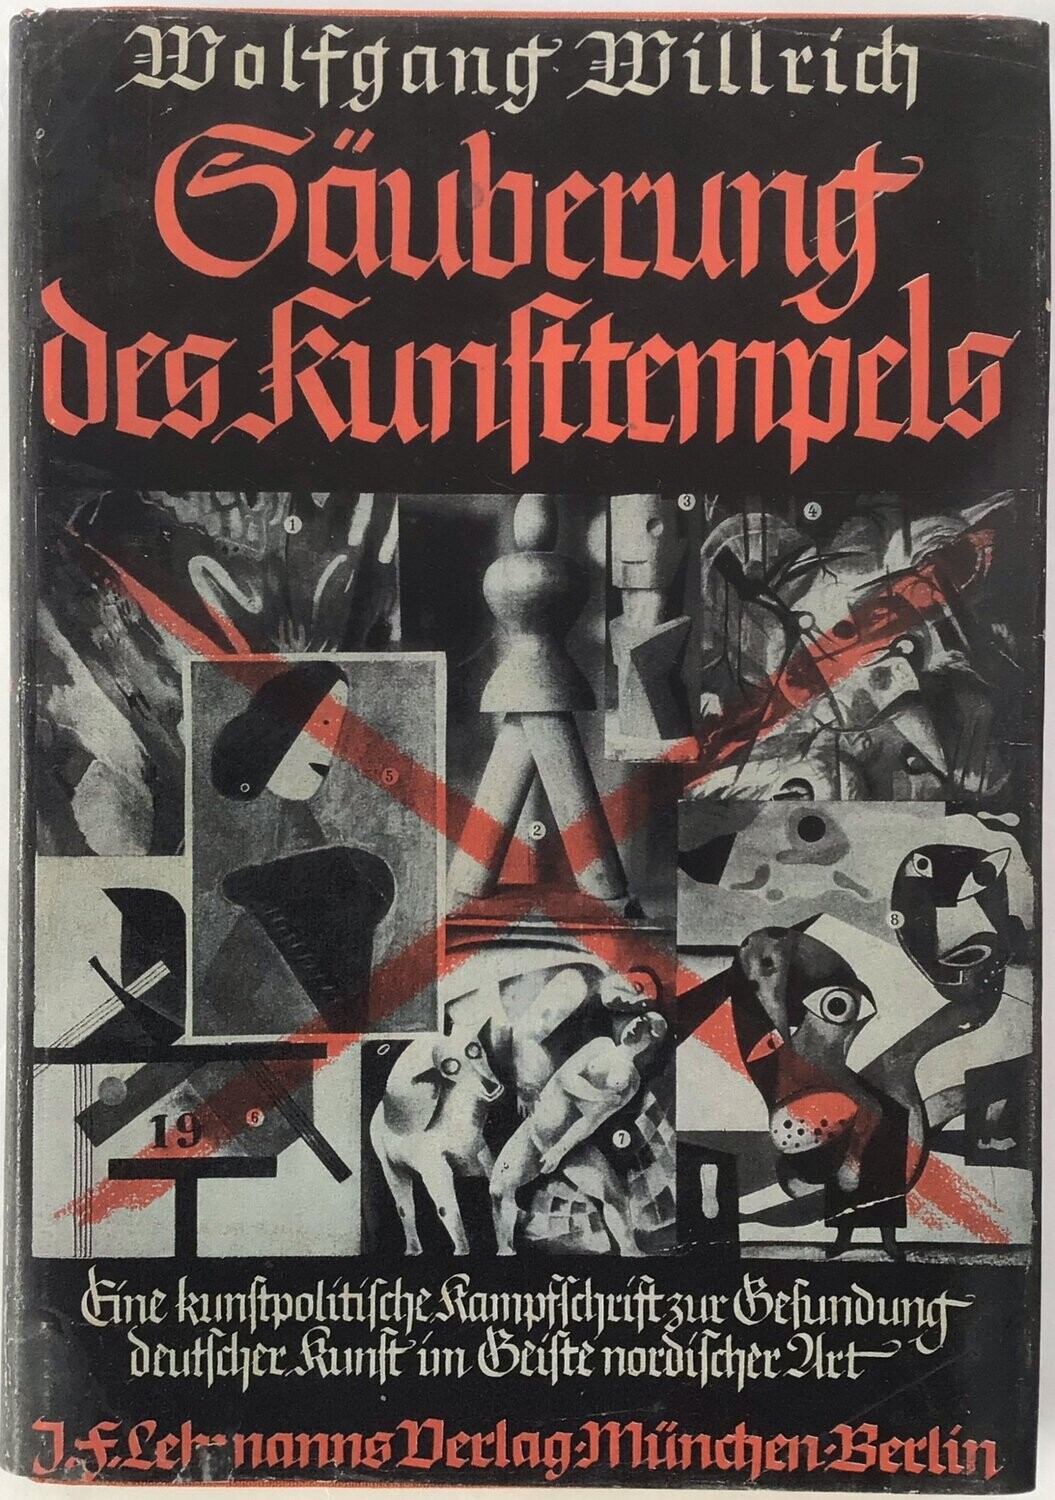 Willrich: Säuberung des Kunsttempels - Ganzleinenausgabe (2. Auflage) aus dem Jahr 1938 mit Schutzumschlag (Farbkopie)